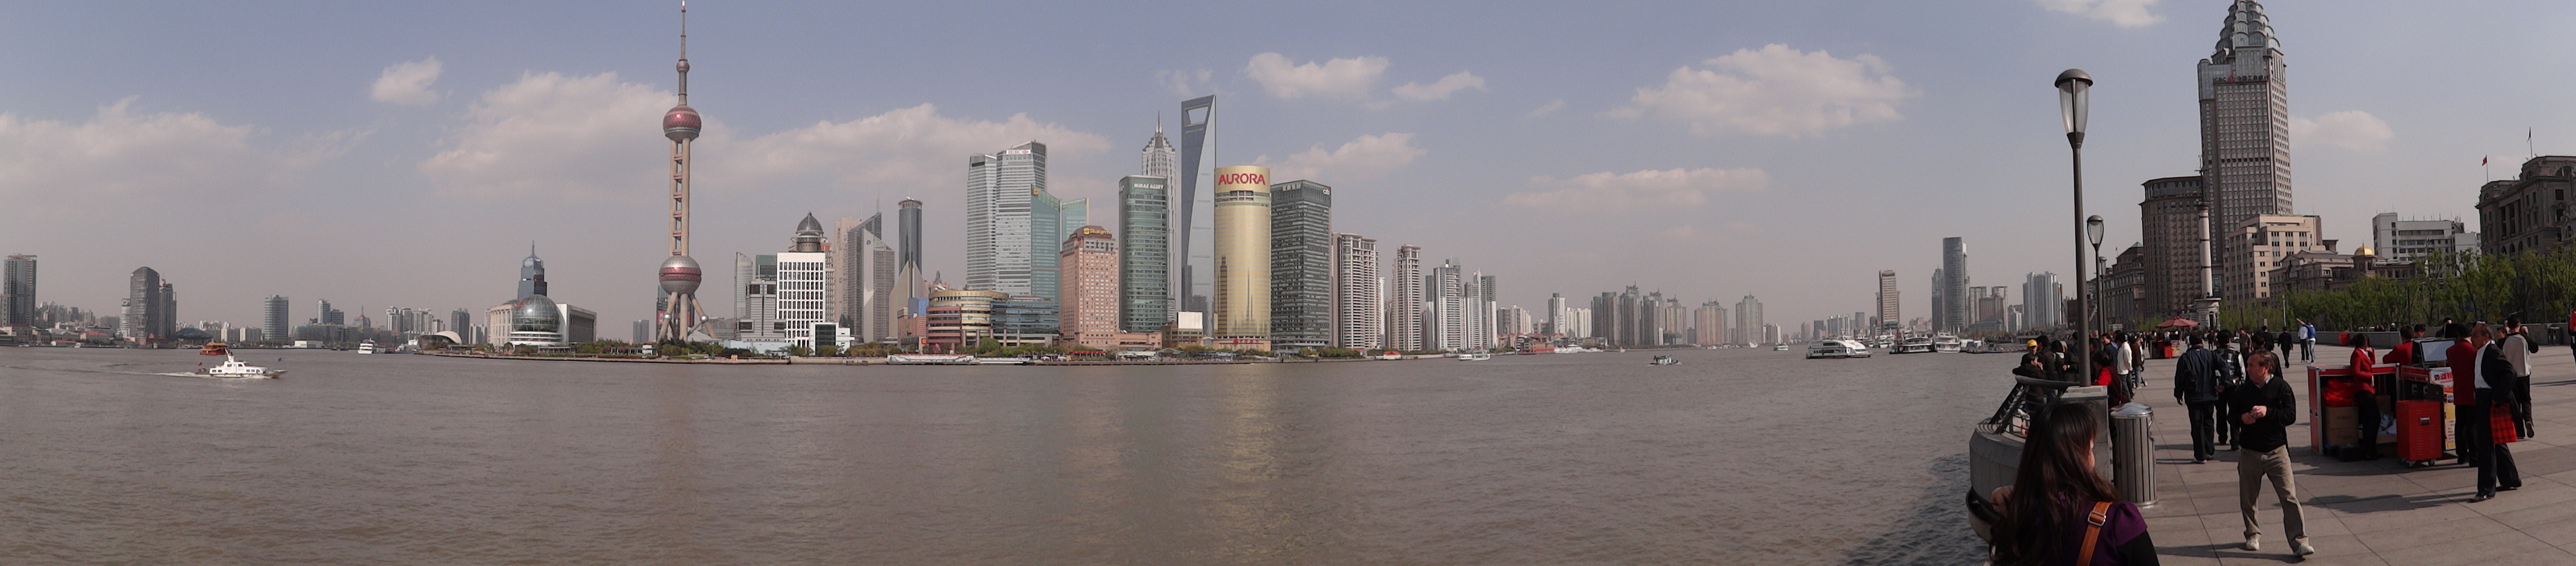 Resultado de imagem para SFC - Shanghai Financial Center